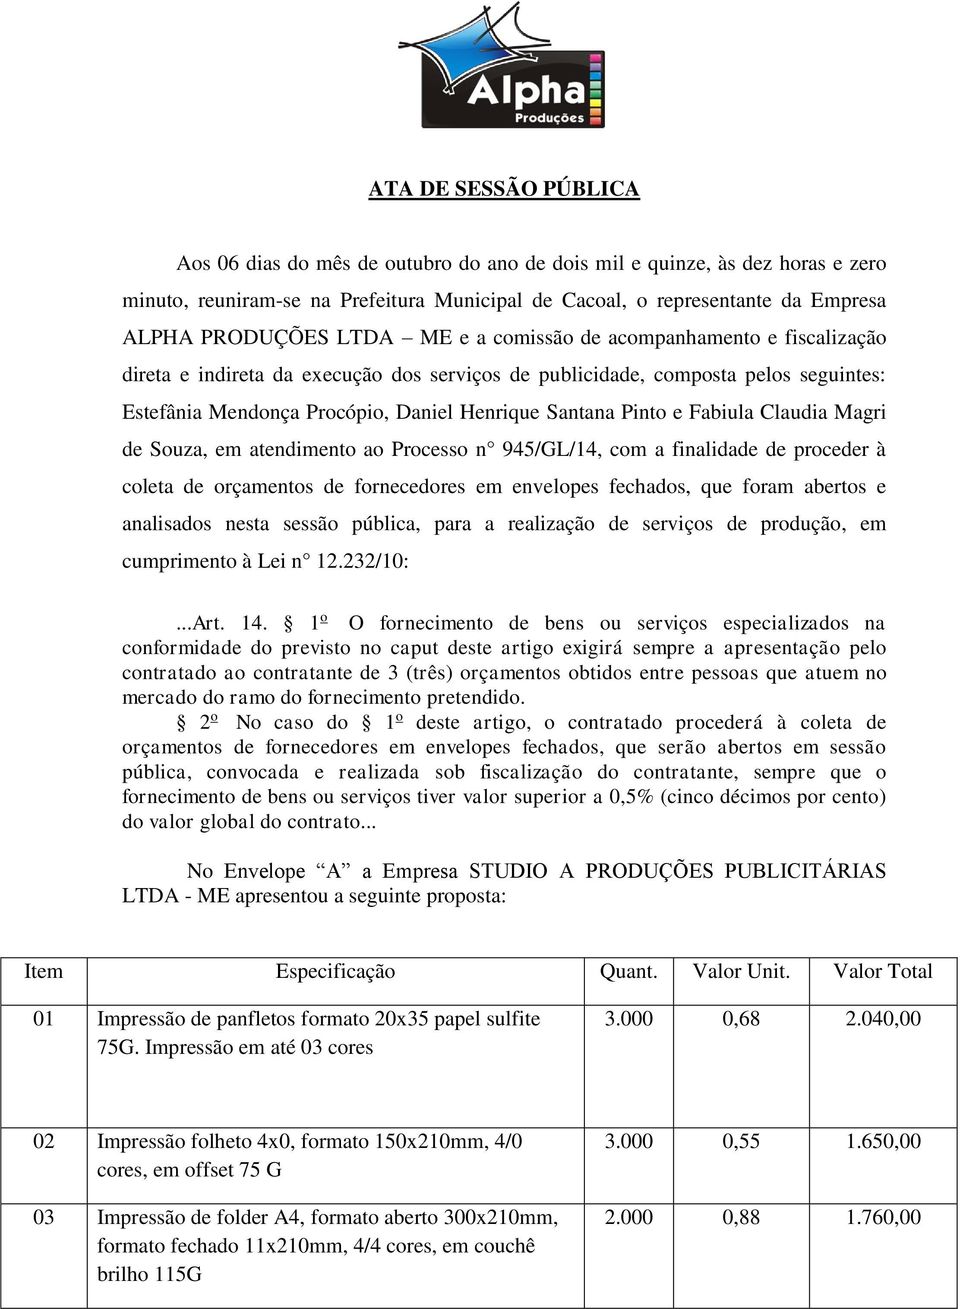 Fabiula Claudia Magri de Souza, em atendimento ao Processo n 945/GL/14, com a finalidade de proceder à coleta de orçamentos de fornecedores em envelopes fechados, que foram abertos e analisados nesta